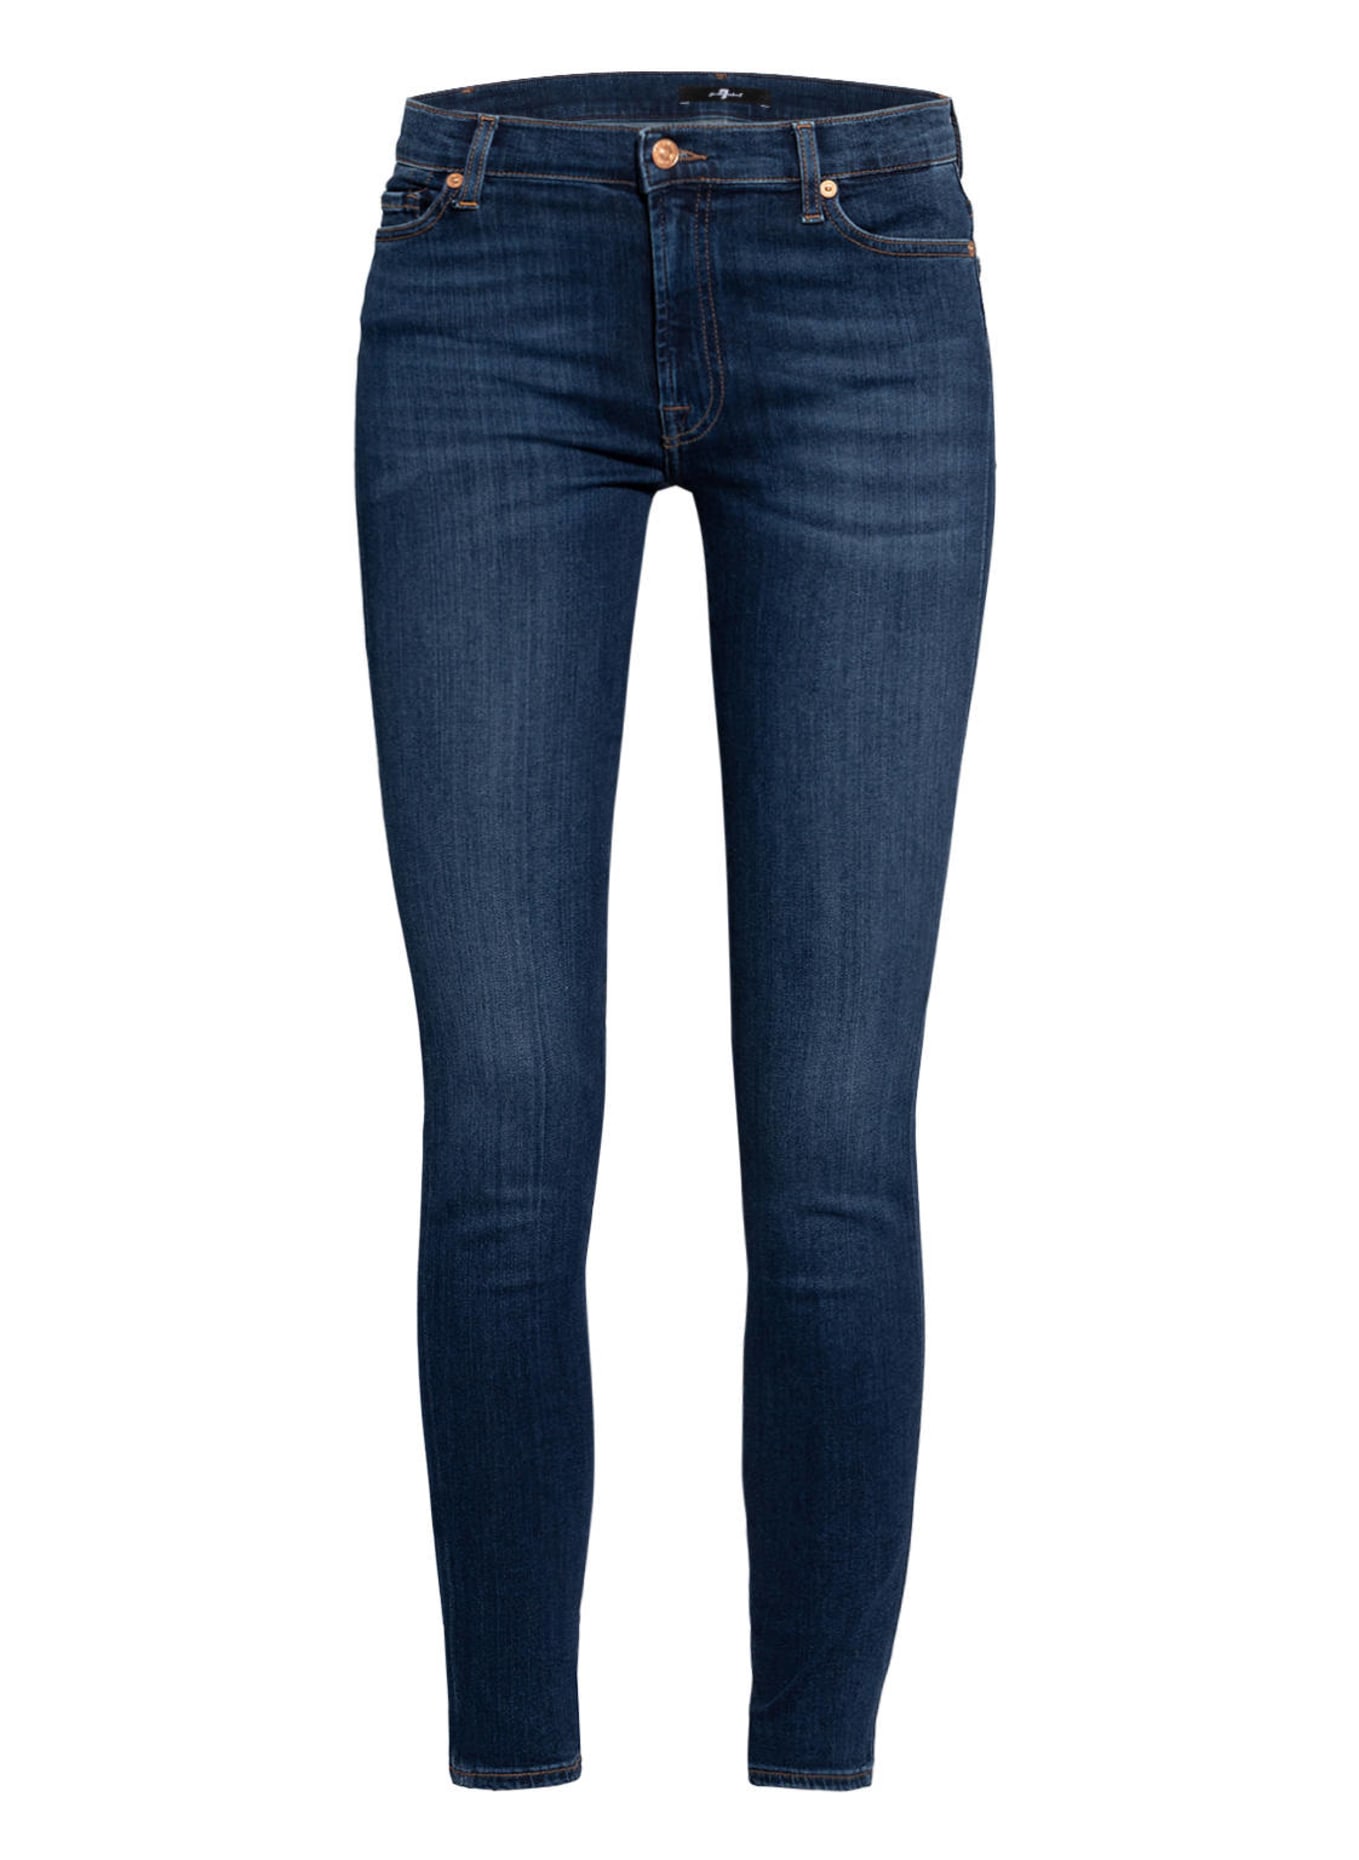 7 for all mankind Skinny Jeans, Farbe: Slim Illusion Luxe Starlight DARK BLUE (Bild 1)